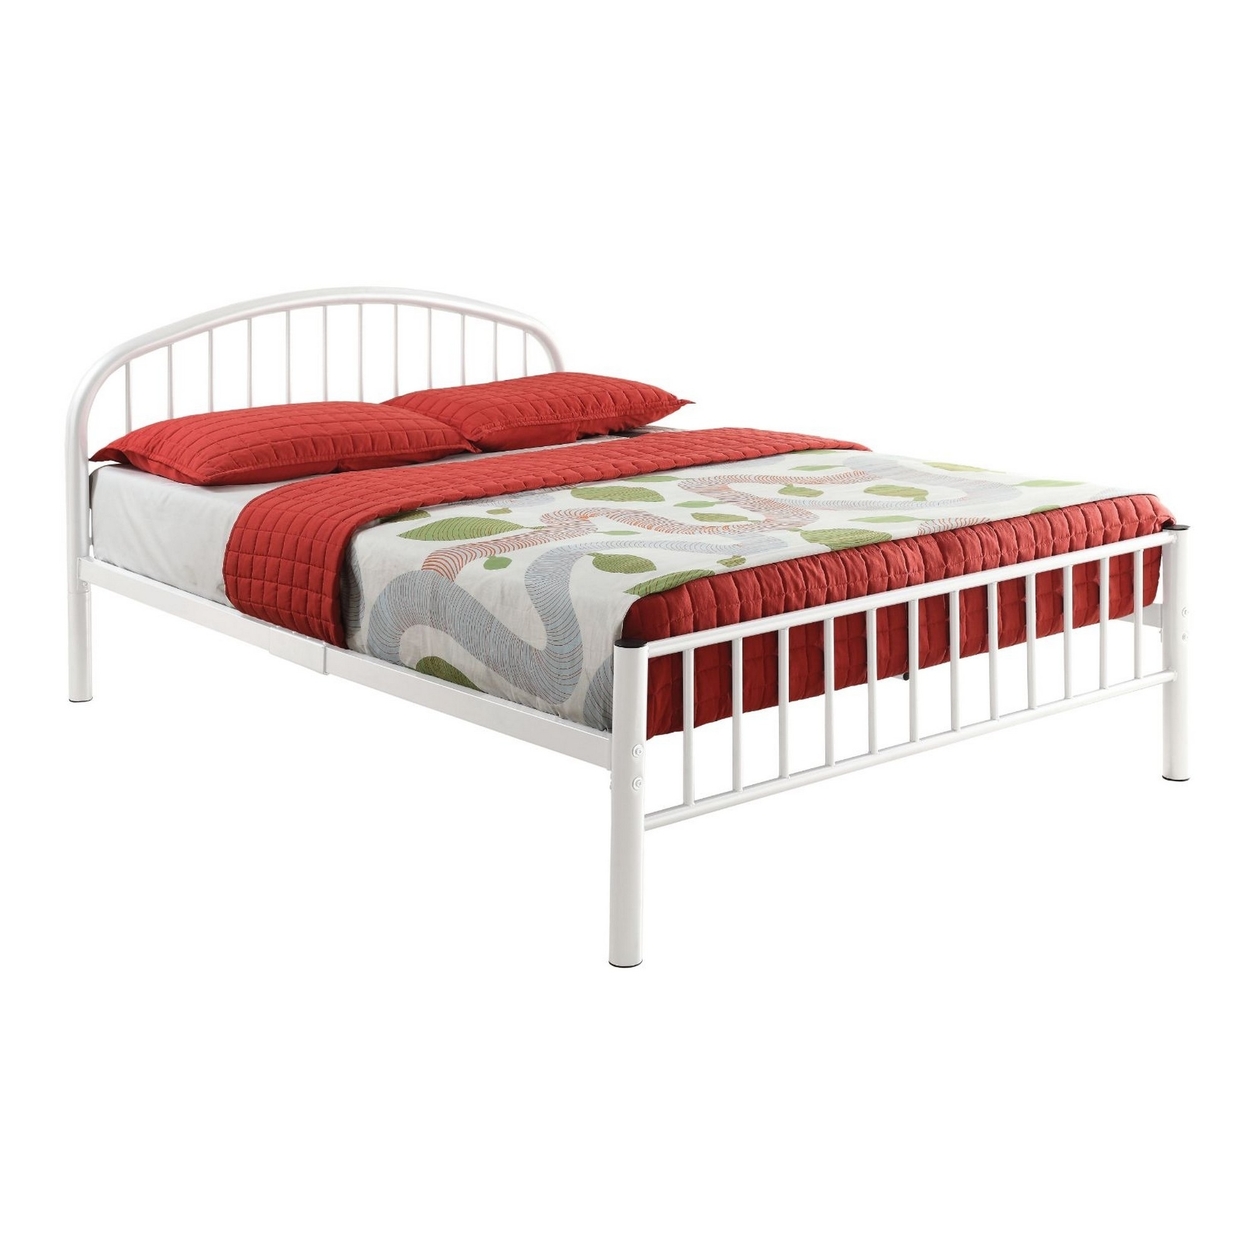 Metal Full Bed In Slatted Style, White- Saltoro Sherpi